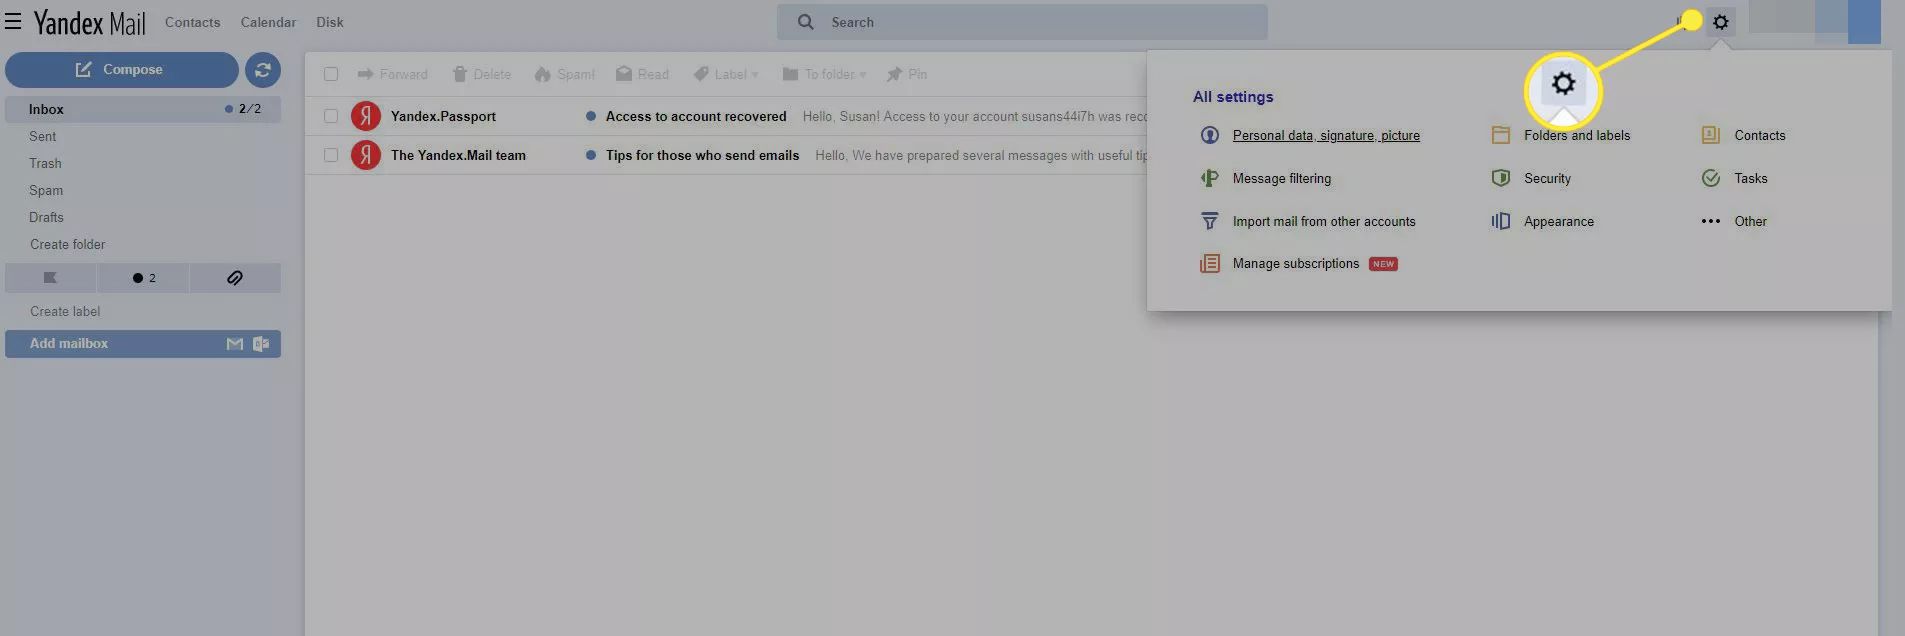 O aplicativo Yandex Mail com o ícone de engrenagem destacado